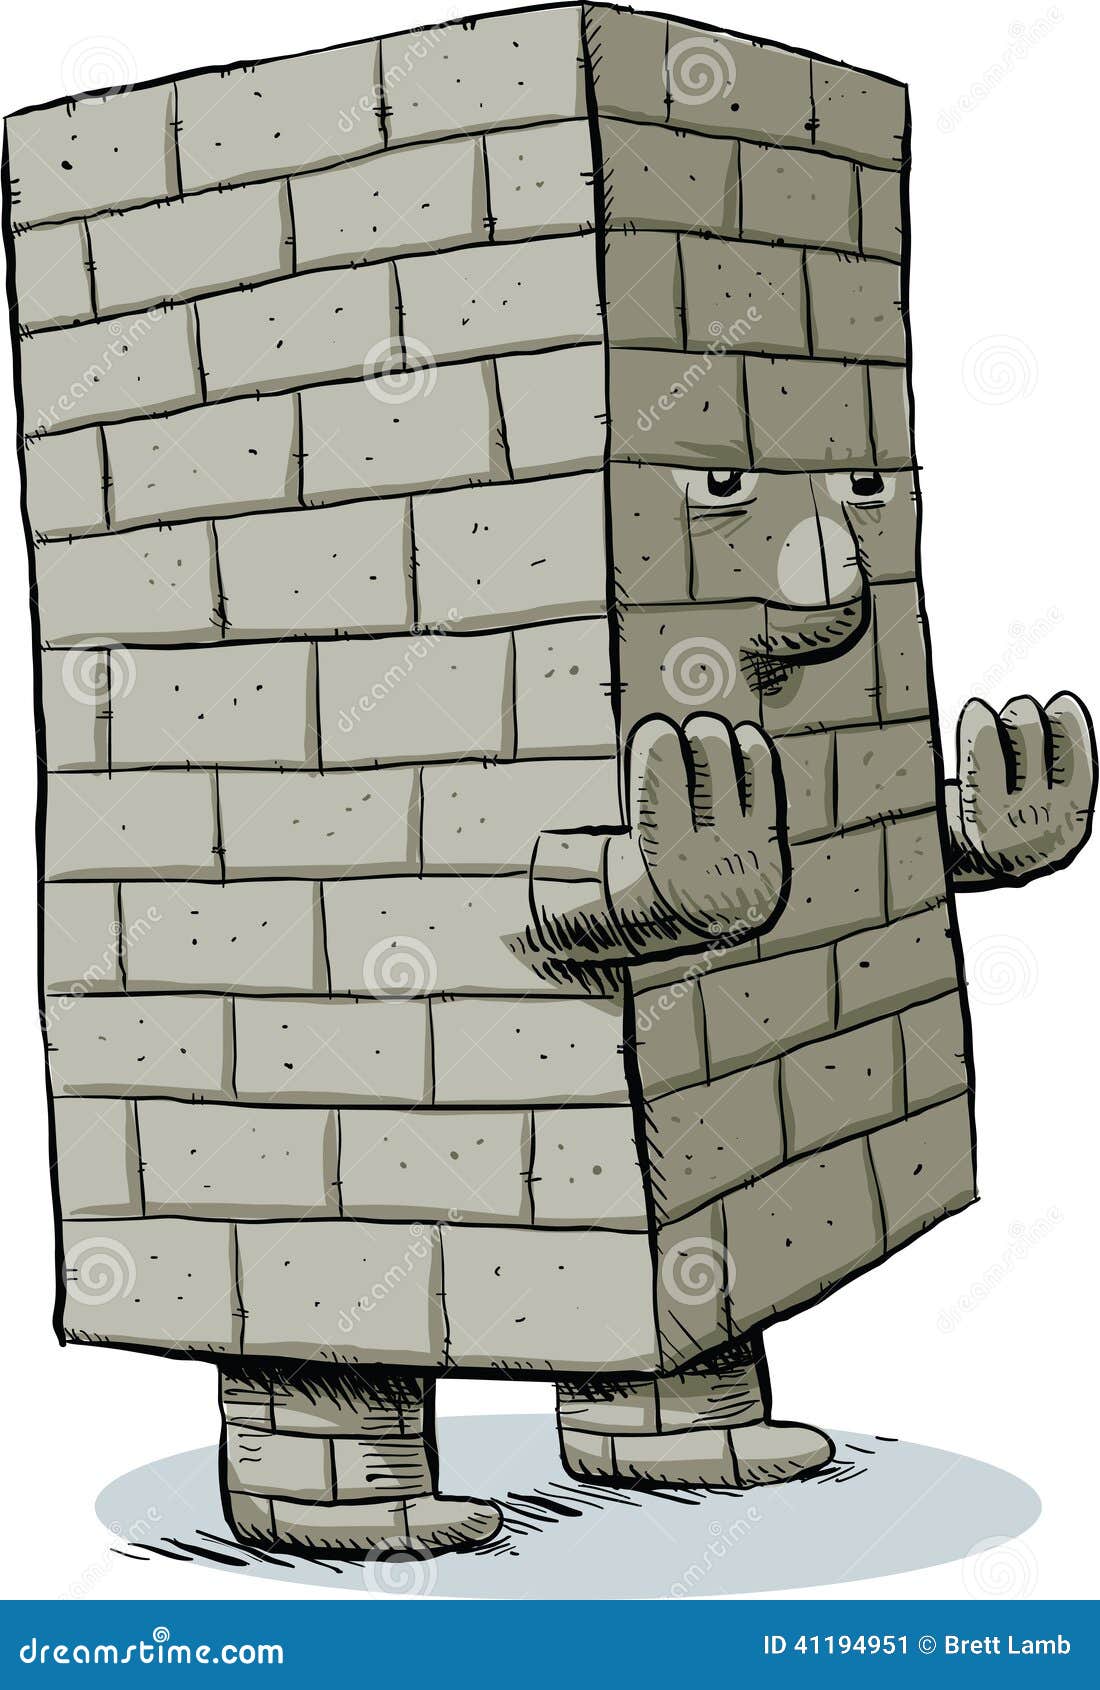 Cartoon Block Monster stock illustration. Illustration of ...